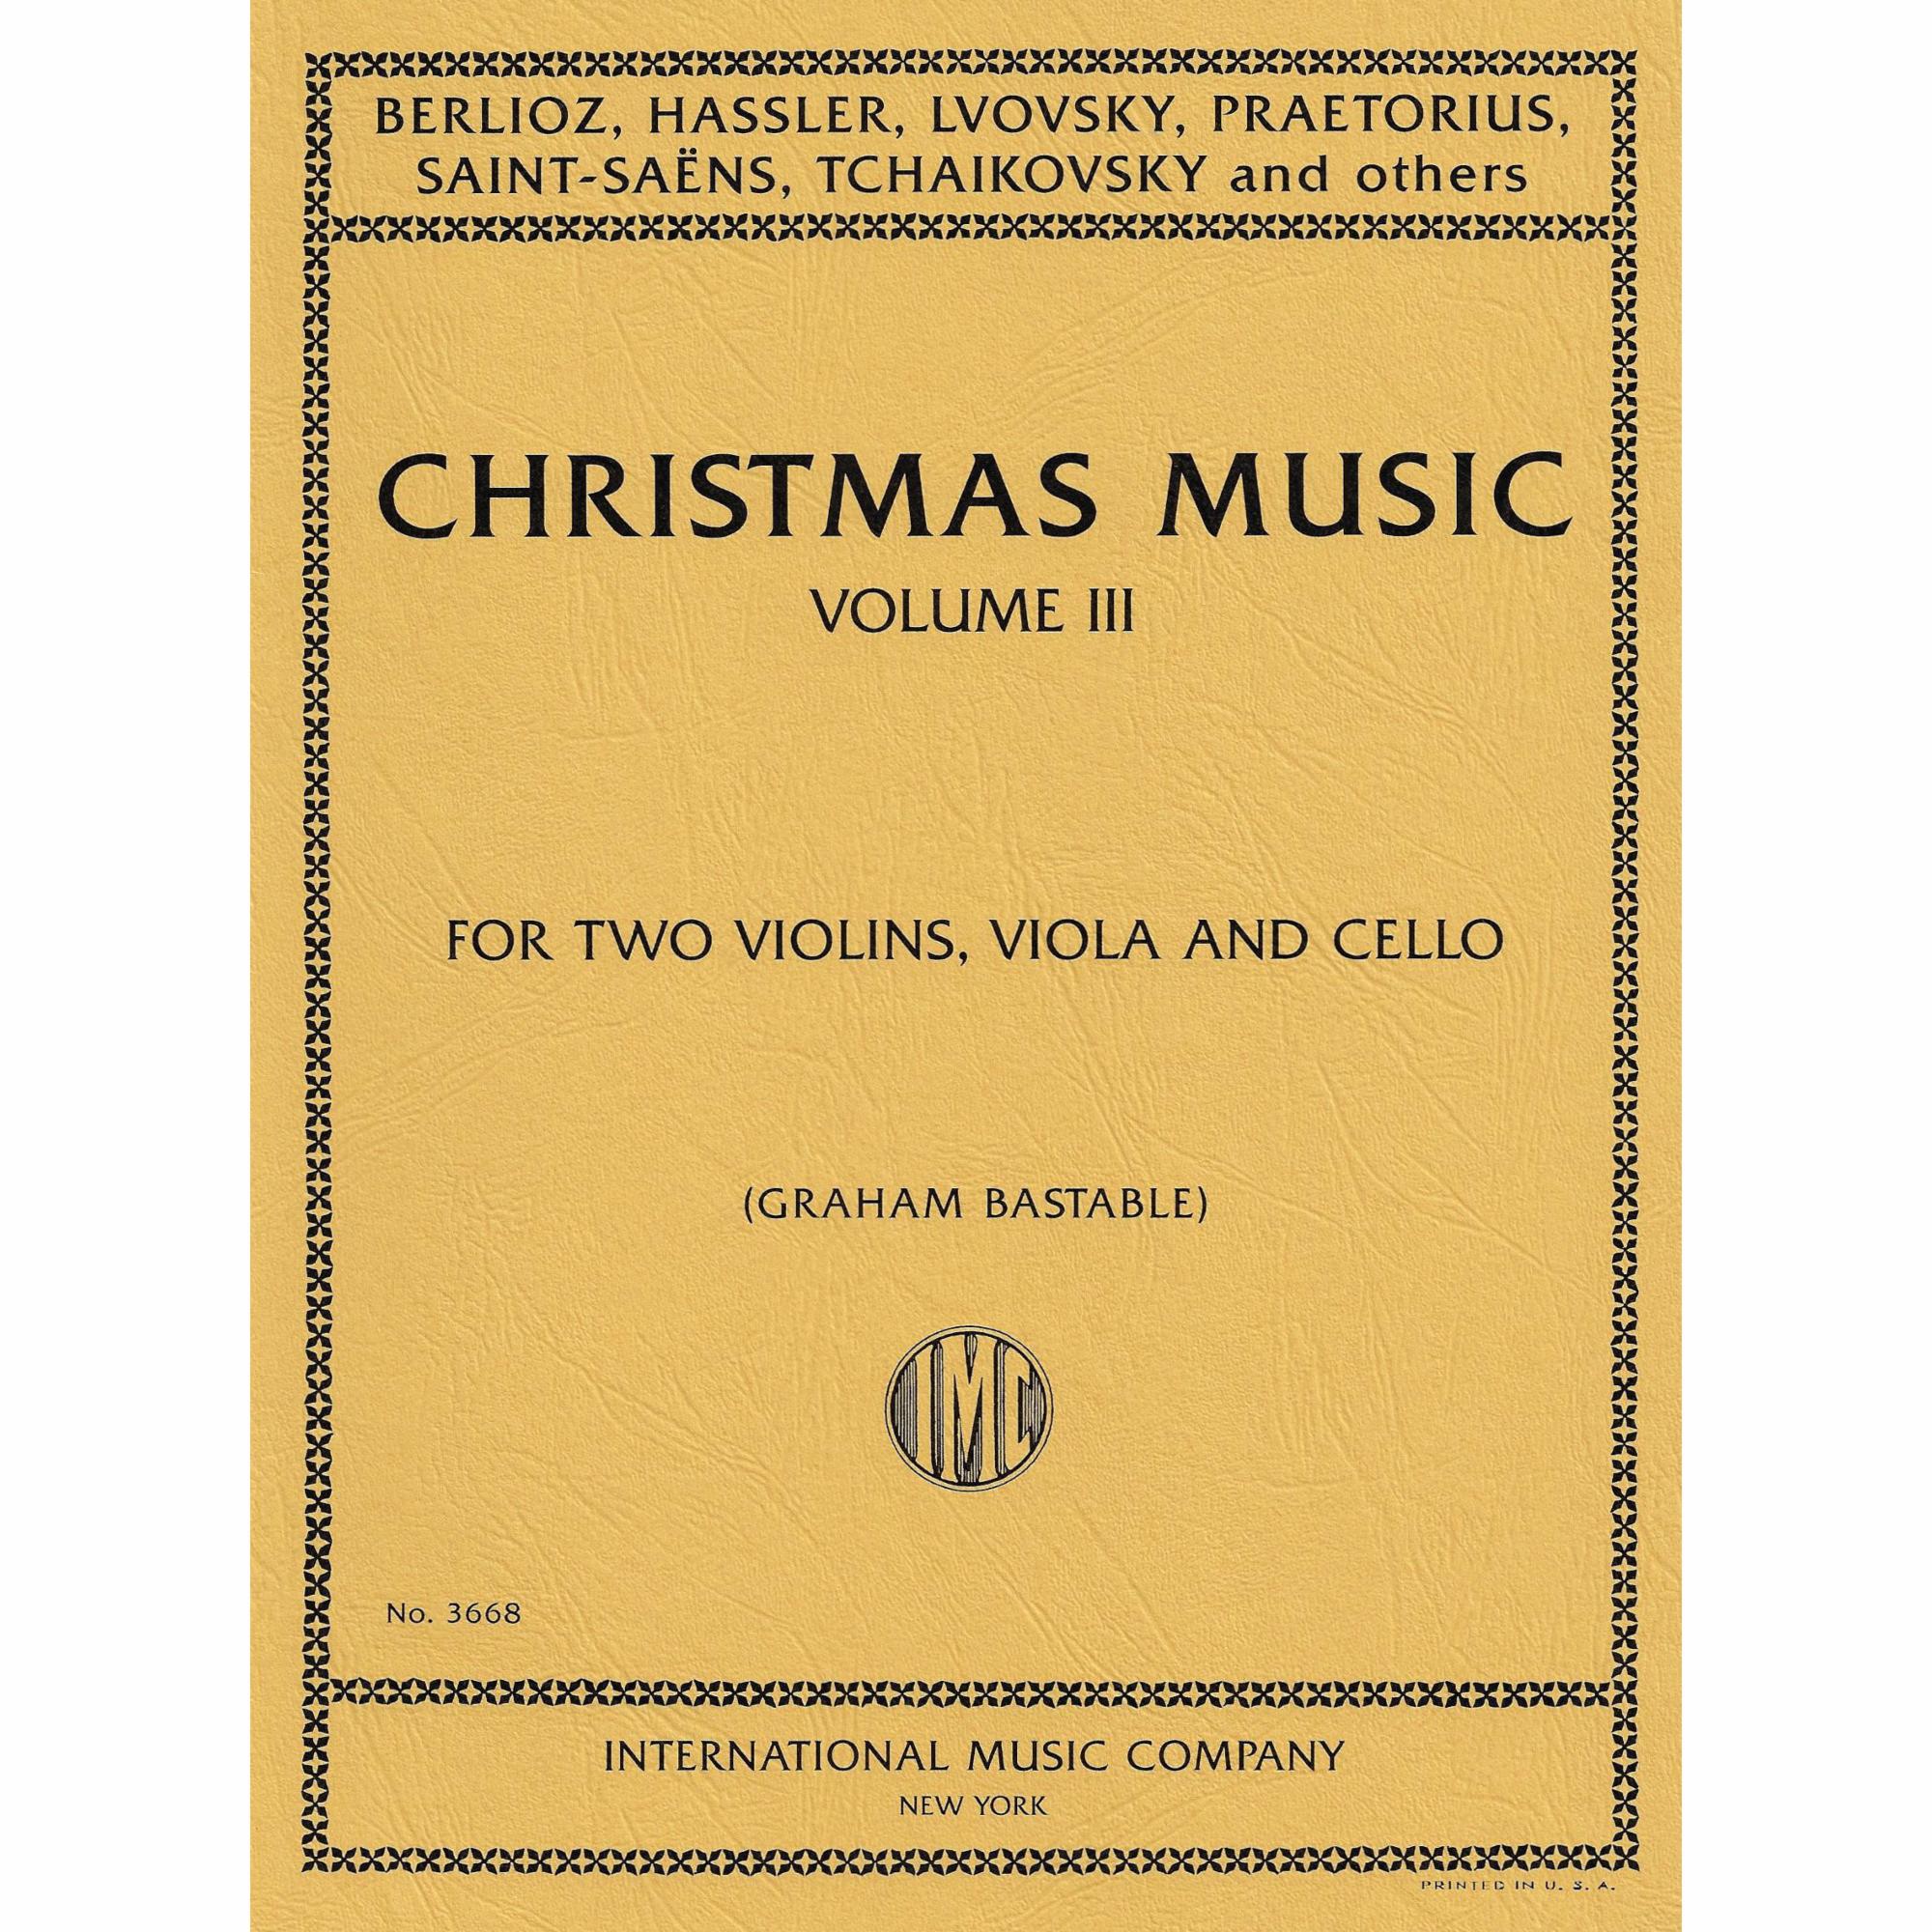 Christmas Music for String Quartet, Volume III